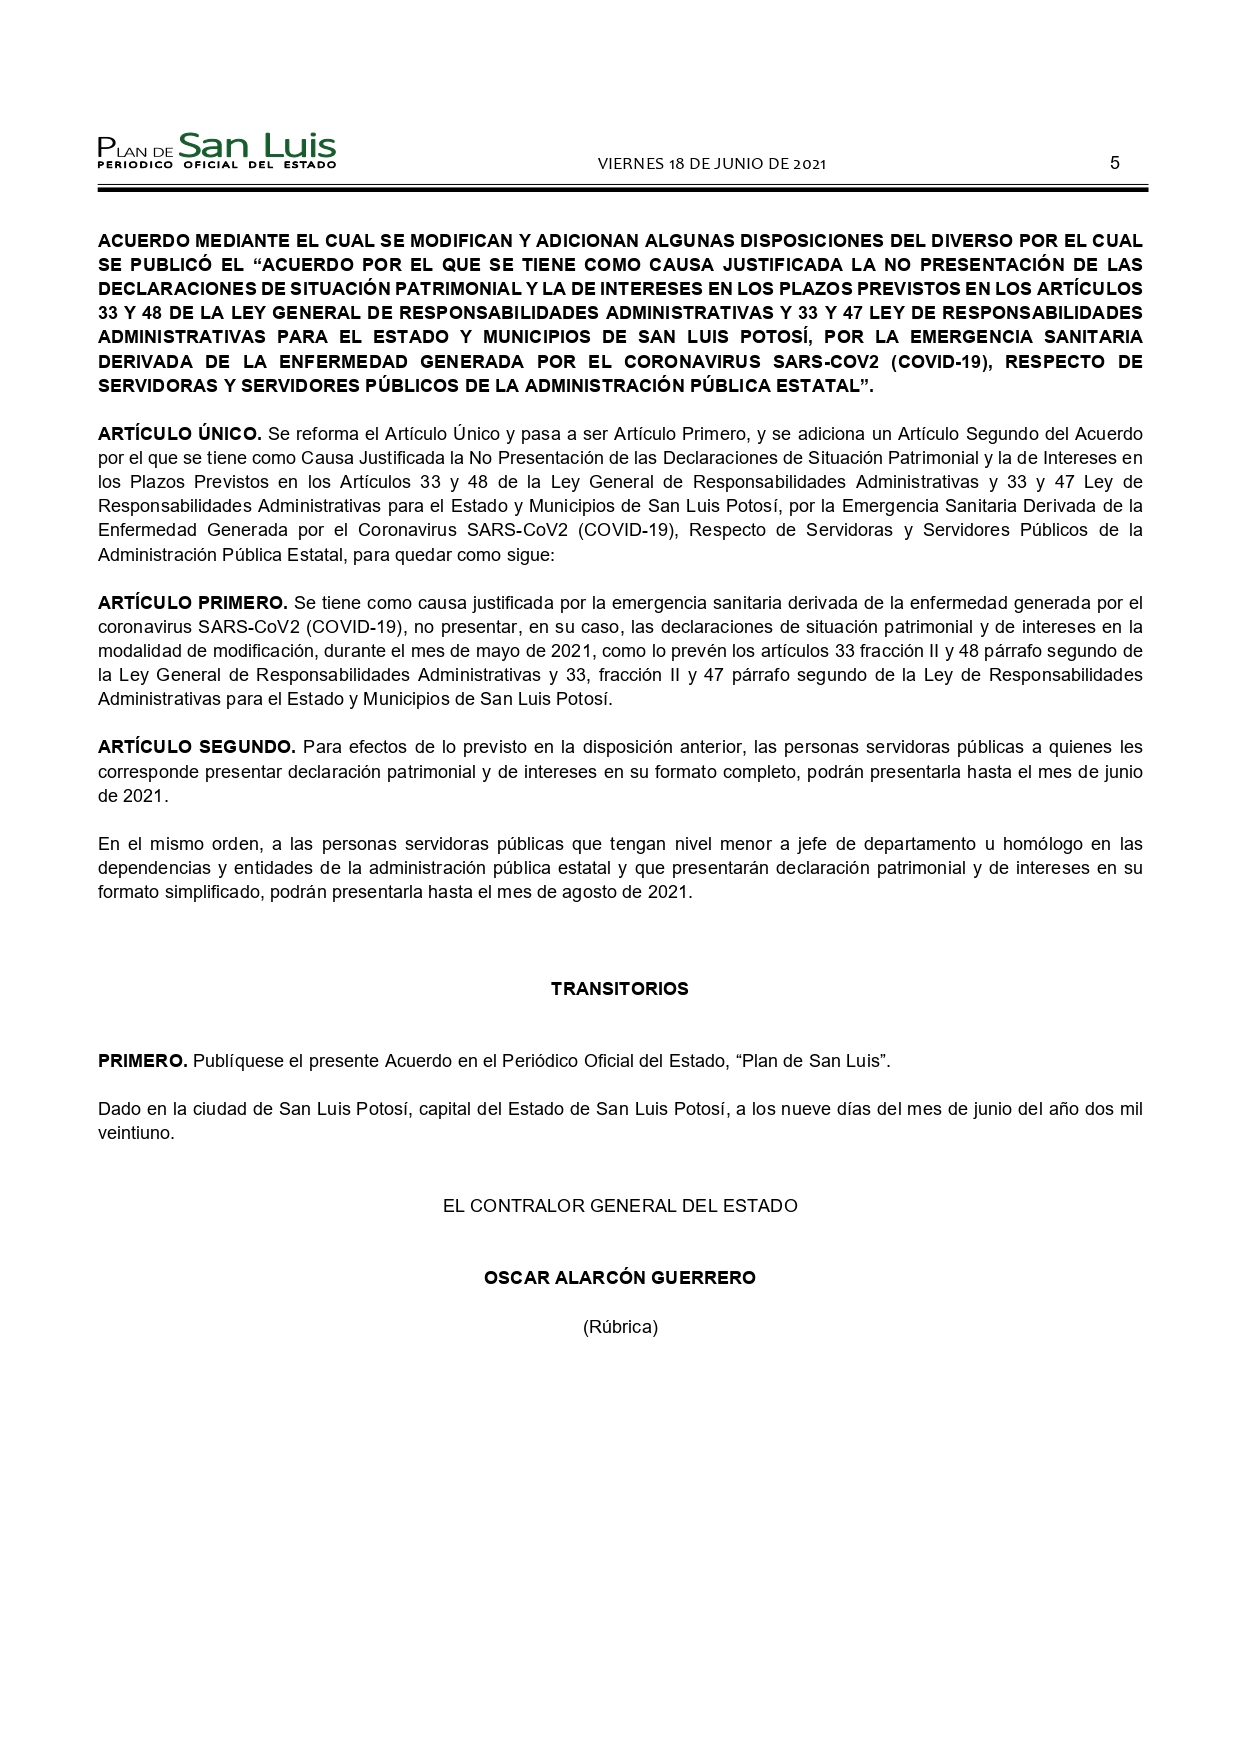 SLP ACUERDO CONTRALORIA GENERAL MODIFICA PLAZO DE DECLARACIONES (18-JUN-2021) (1)_page-0005.jpg